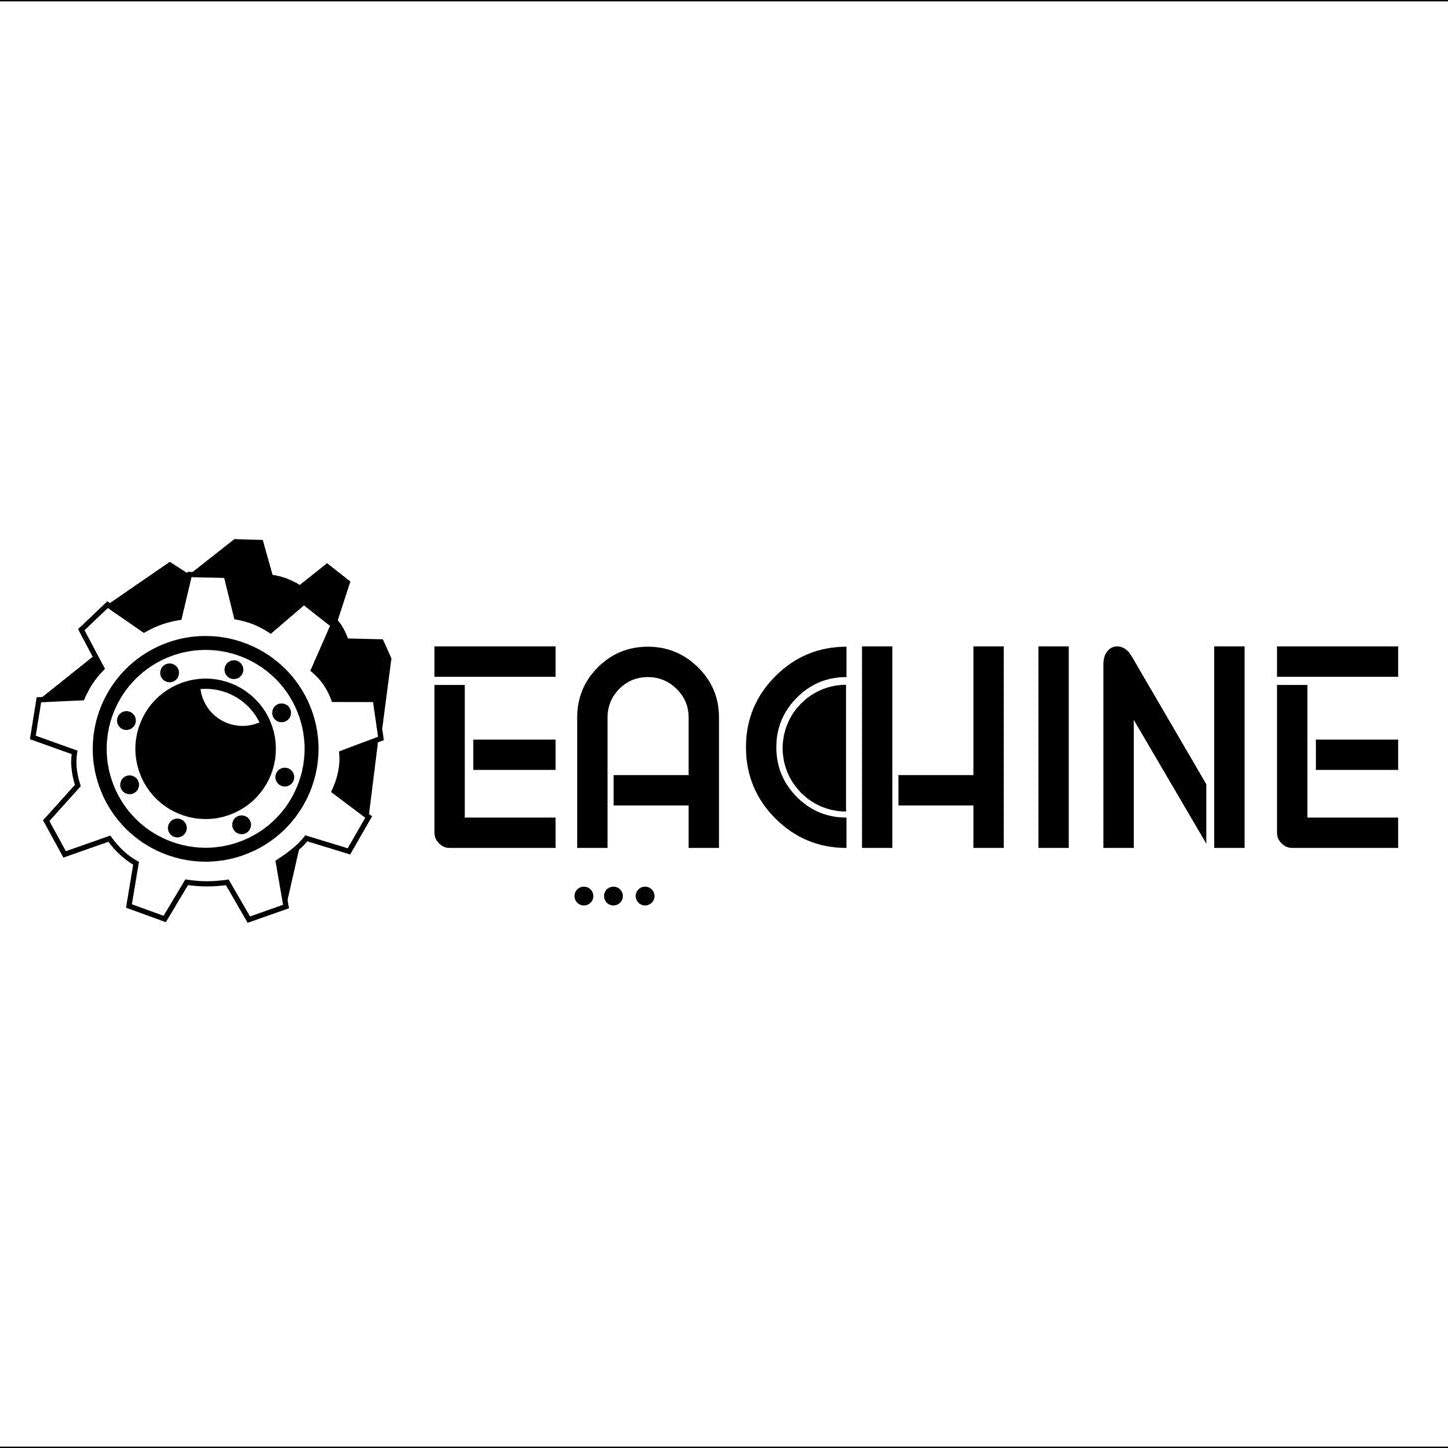 Eachine | Drone Authority